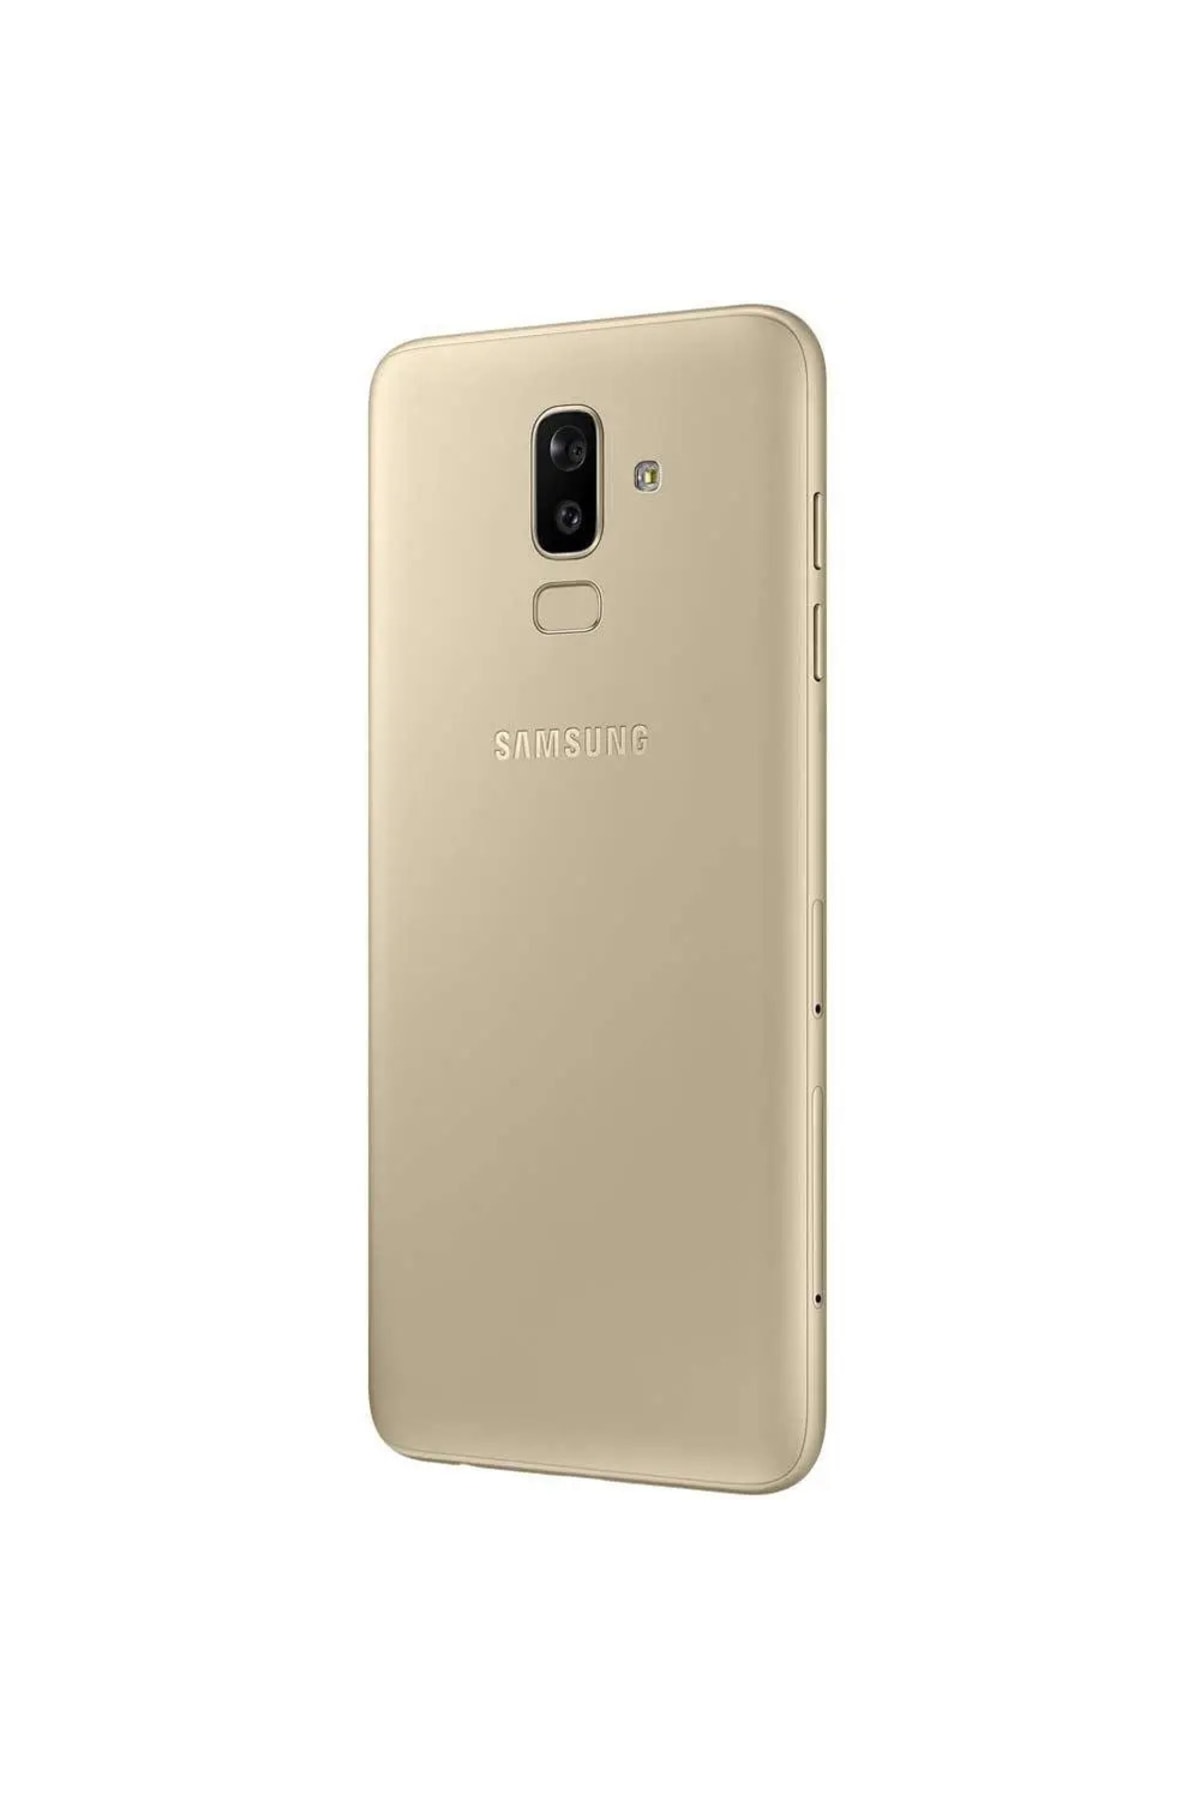 Samsung Yenilenmiş J8 32 Gb Gold (12 Ay Garantili)